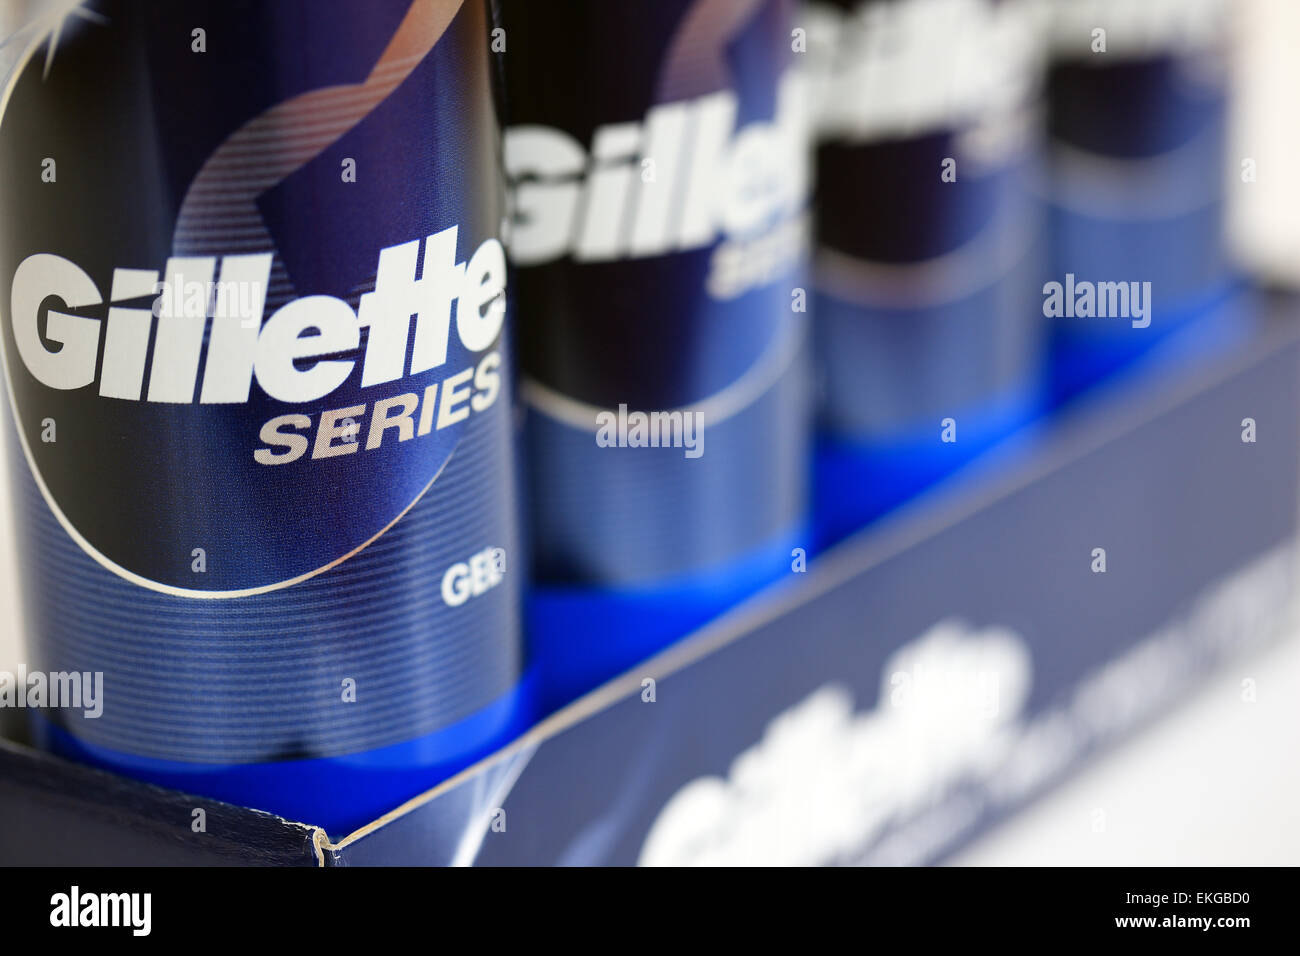 Gillette series shaving gel Stock Photo